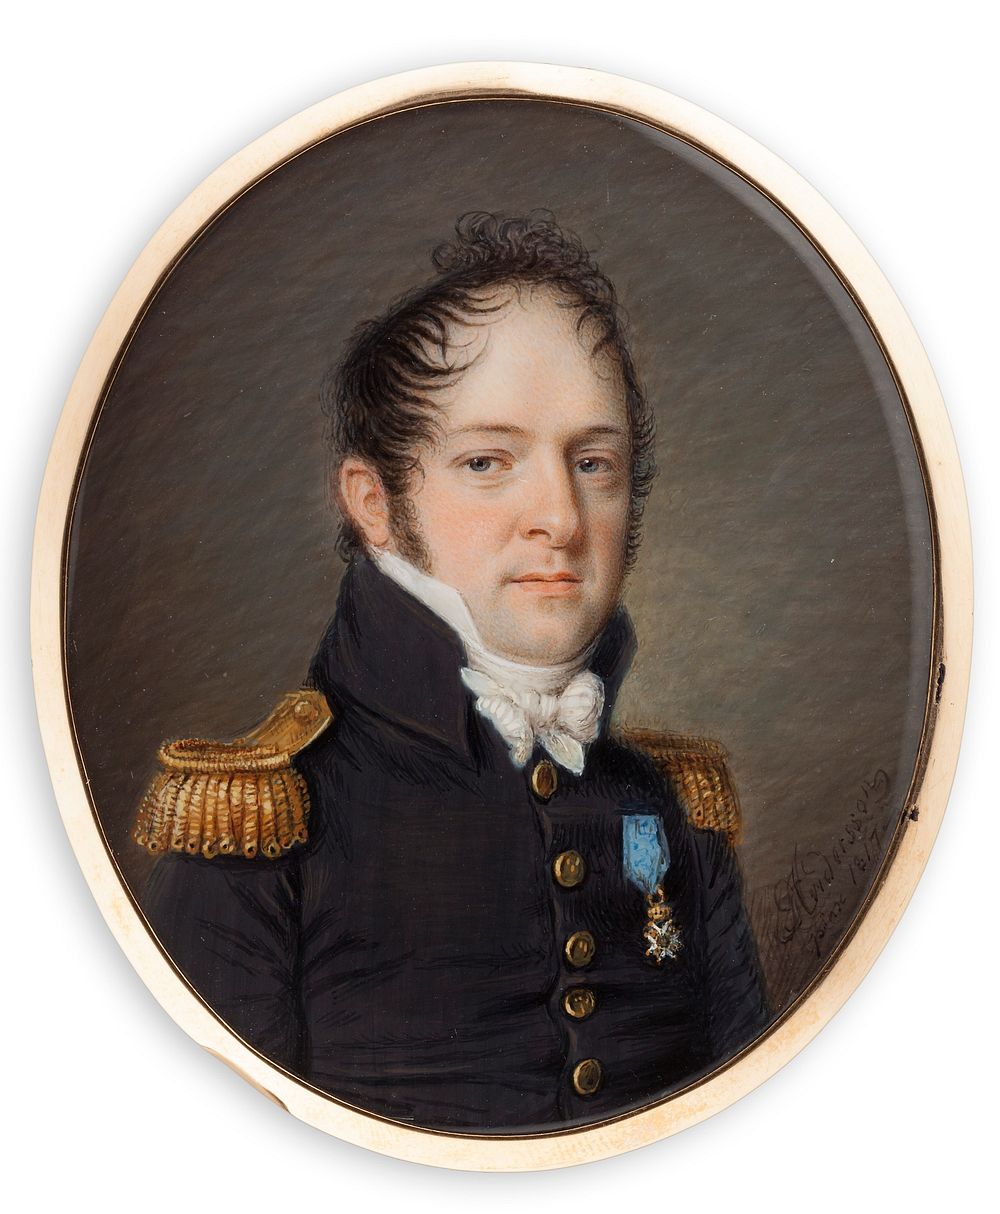 Chancellery councellor g . l. af segerström, 1817